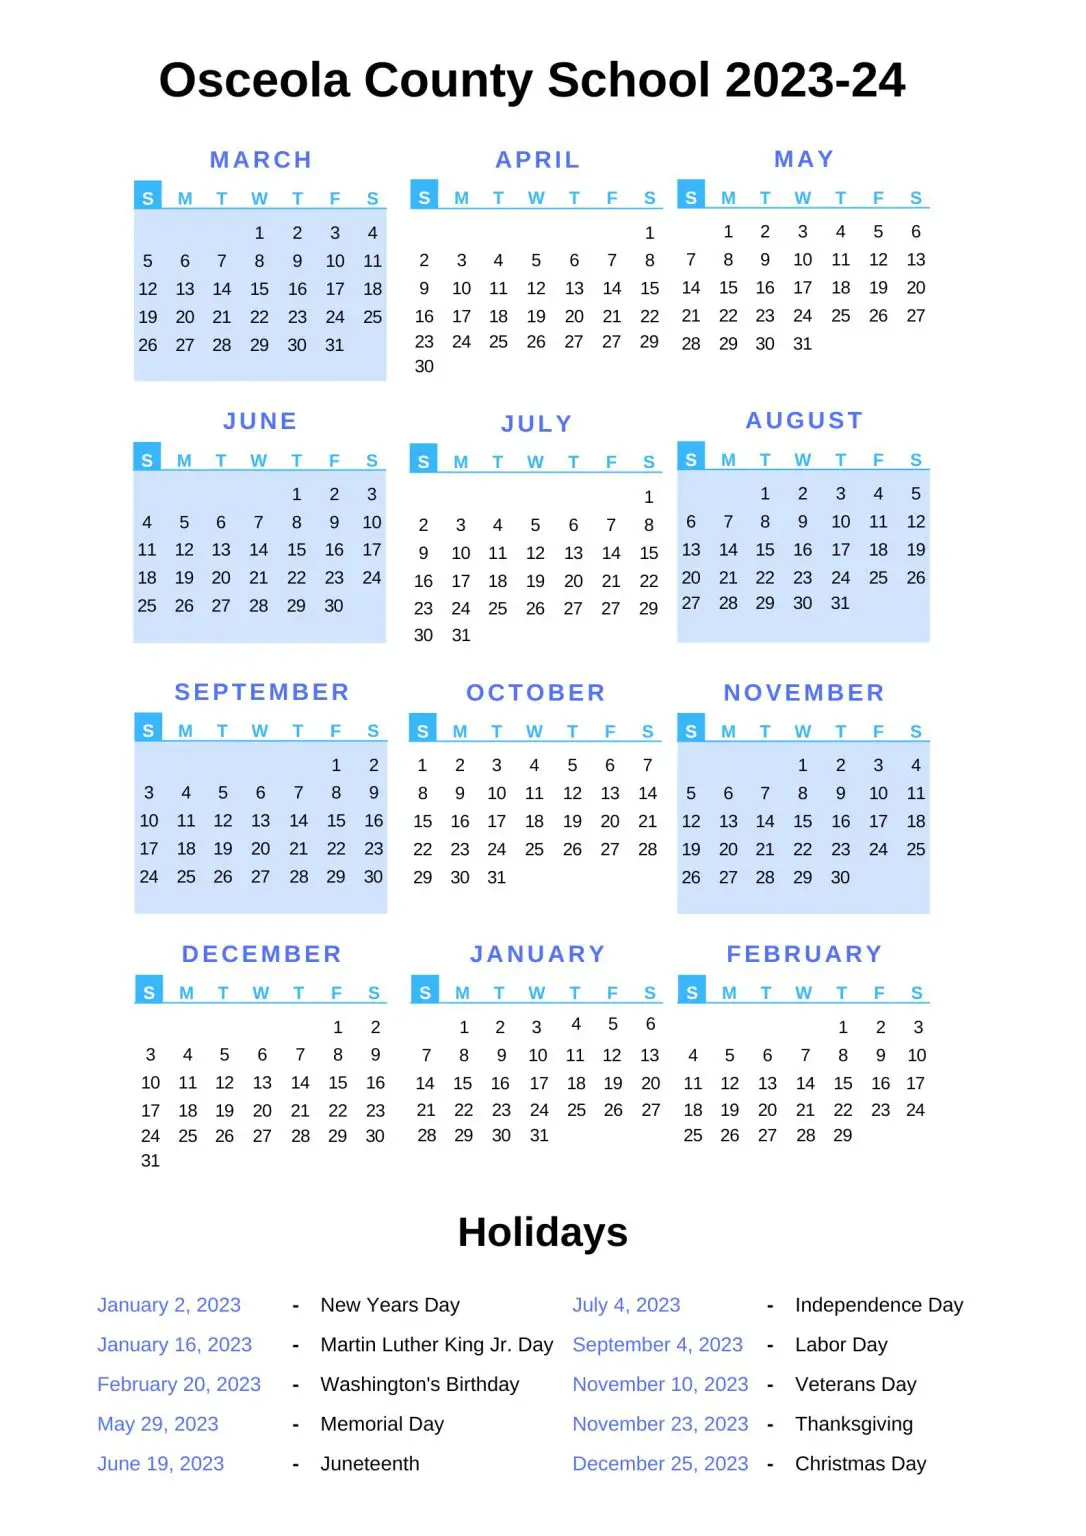 Osceola County School Calendar 2023-24 With Holidays